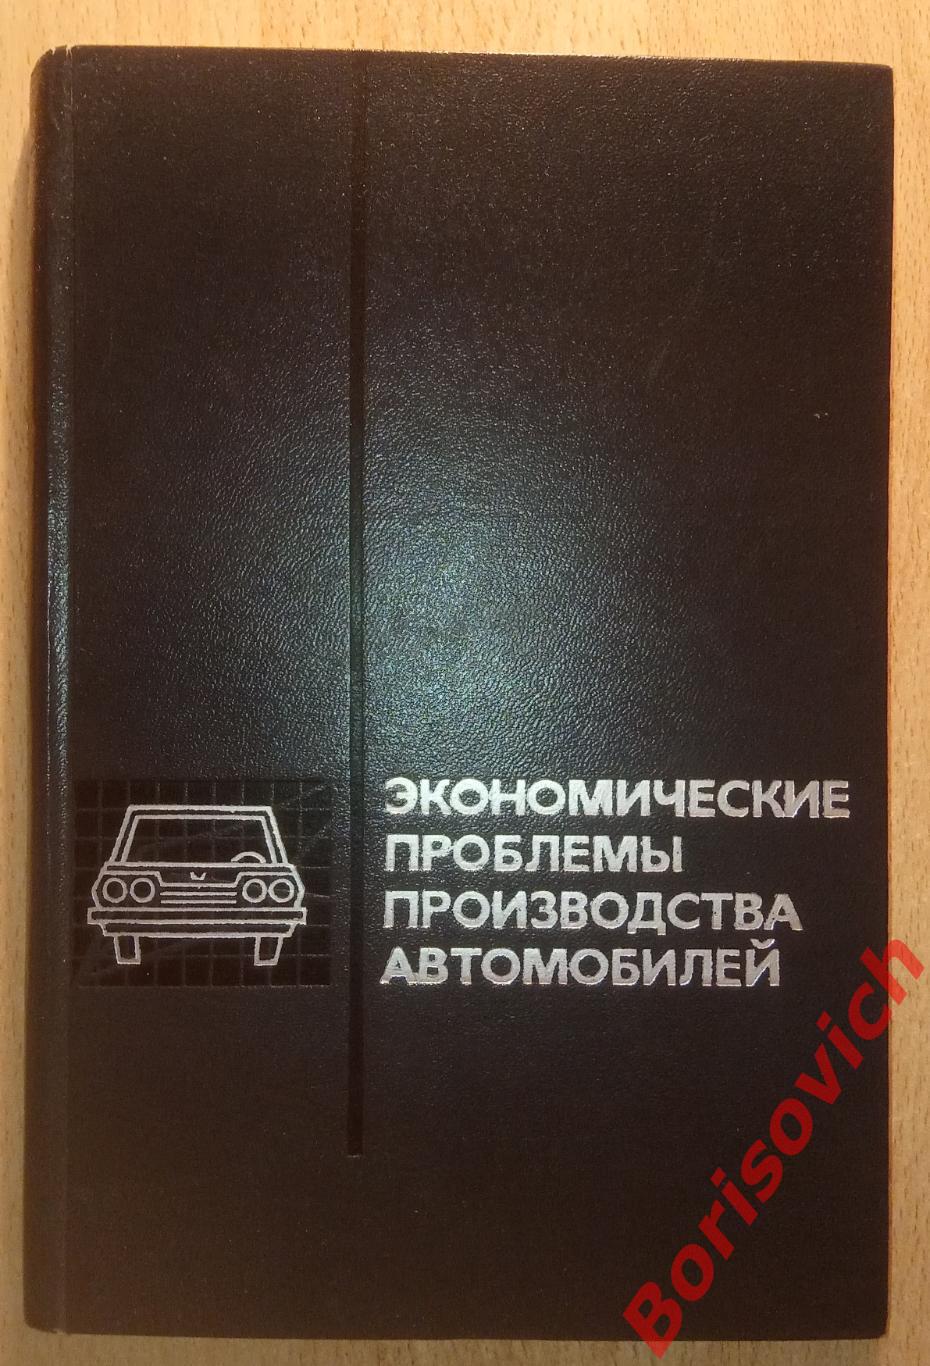 Экономические проблемы производства автомобилей 1971 г 271 стр Тираж 3500 экз